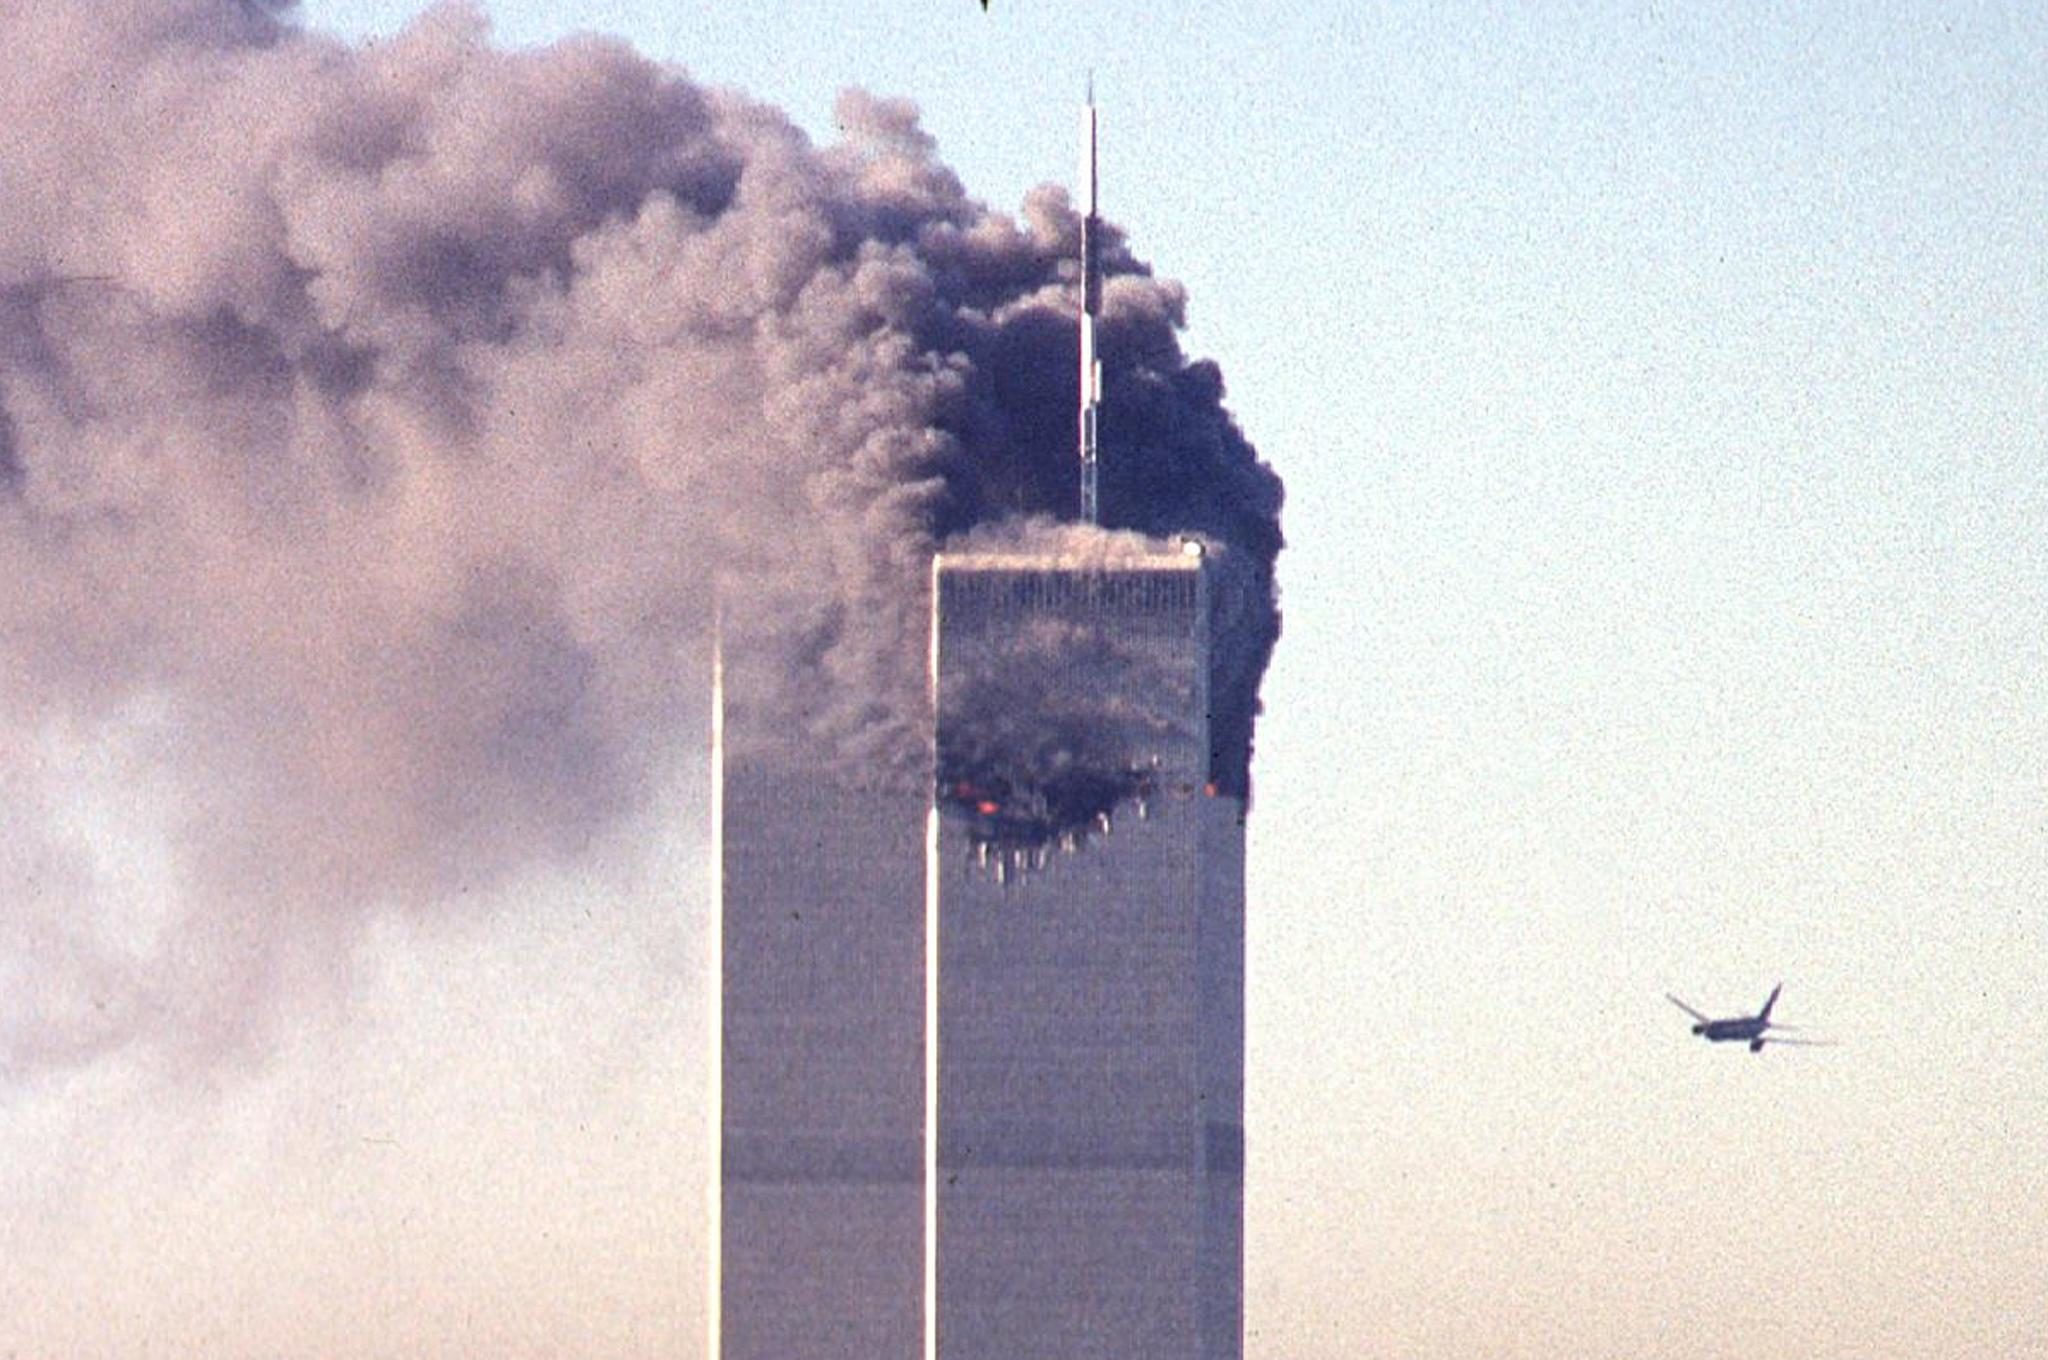 วัชระ แวววุฒินันท์ : 15 ปี 9/11 ทำไมพลเมืองสหรัฐ &#39;มากกว่าครึ่ง&#39; เชื่อว่าเป็นฝีมือของรัฐบาลตัวเอง - มติชนสุดสัปดาห์